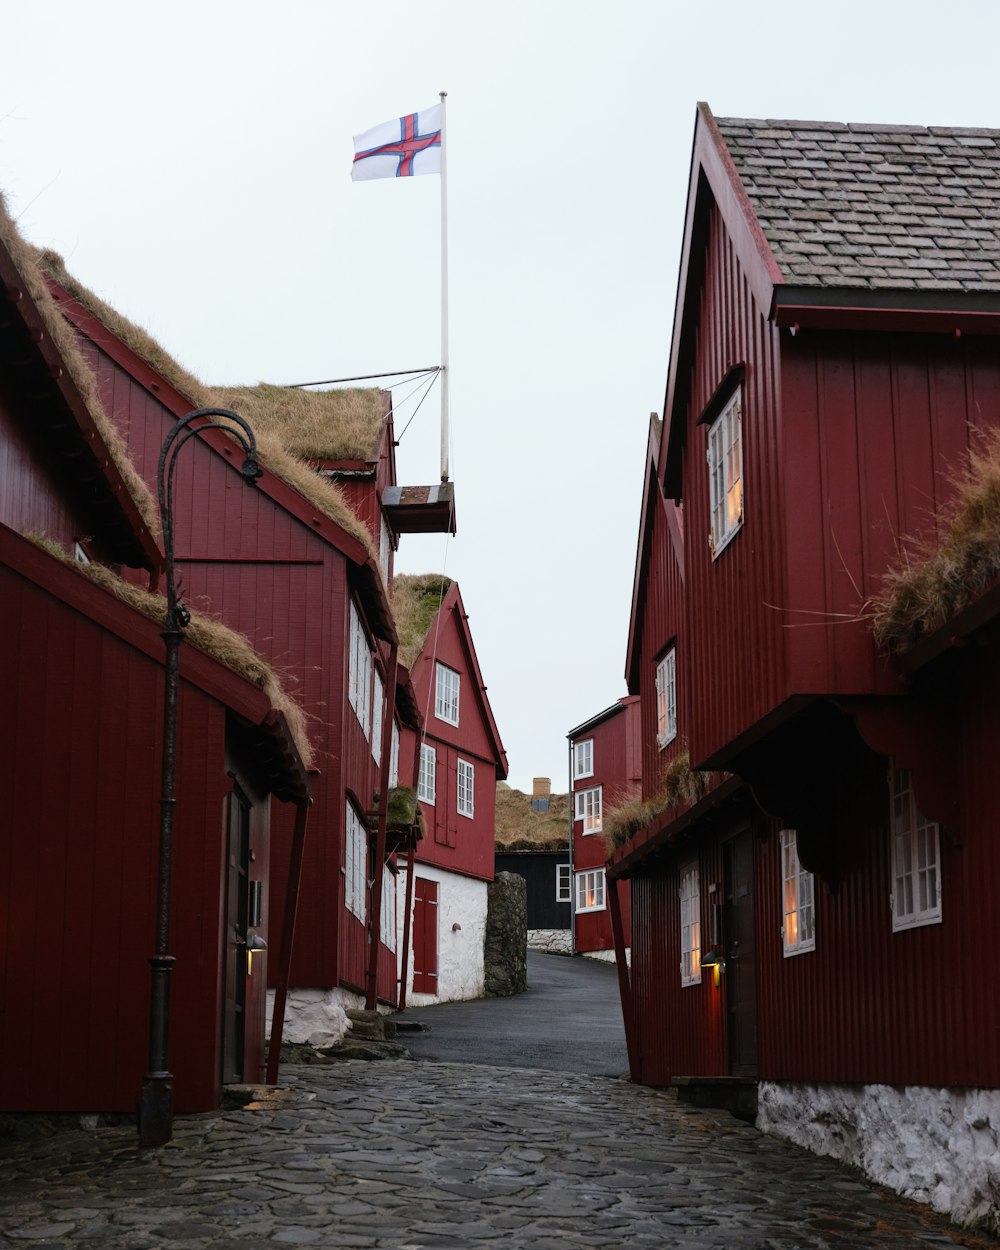 una calle empedrada con edificios rojos y una bandera en un mástil